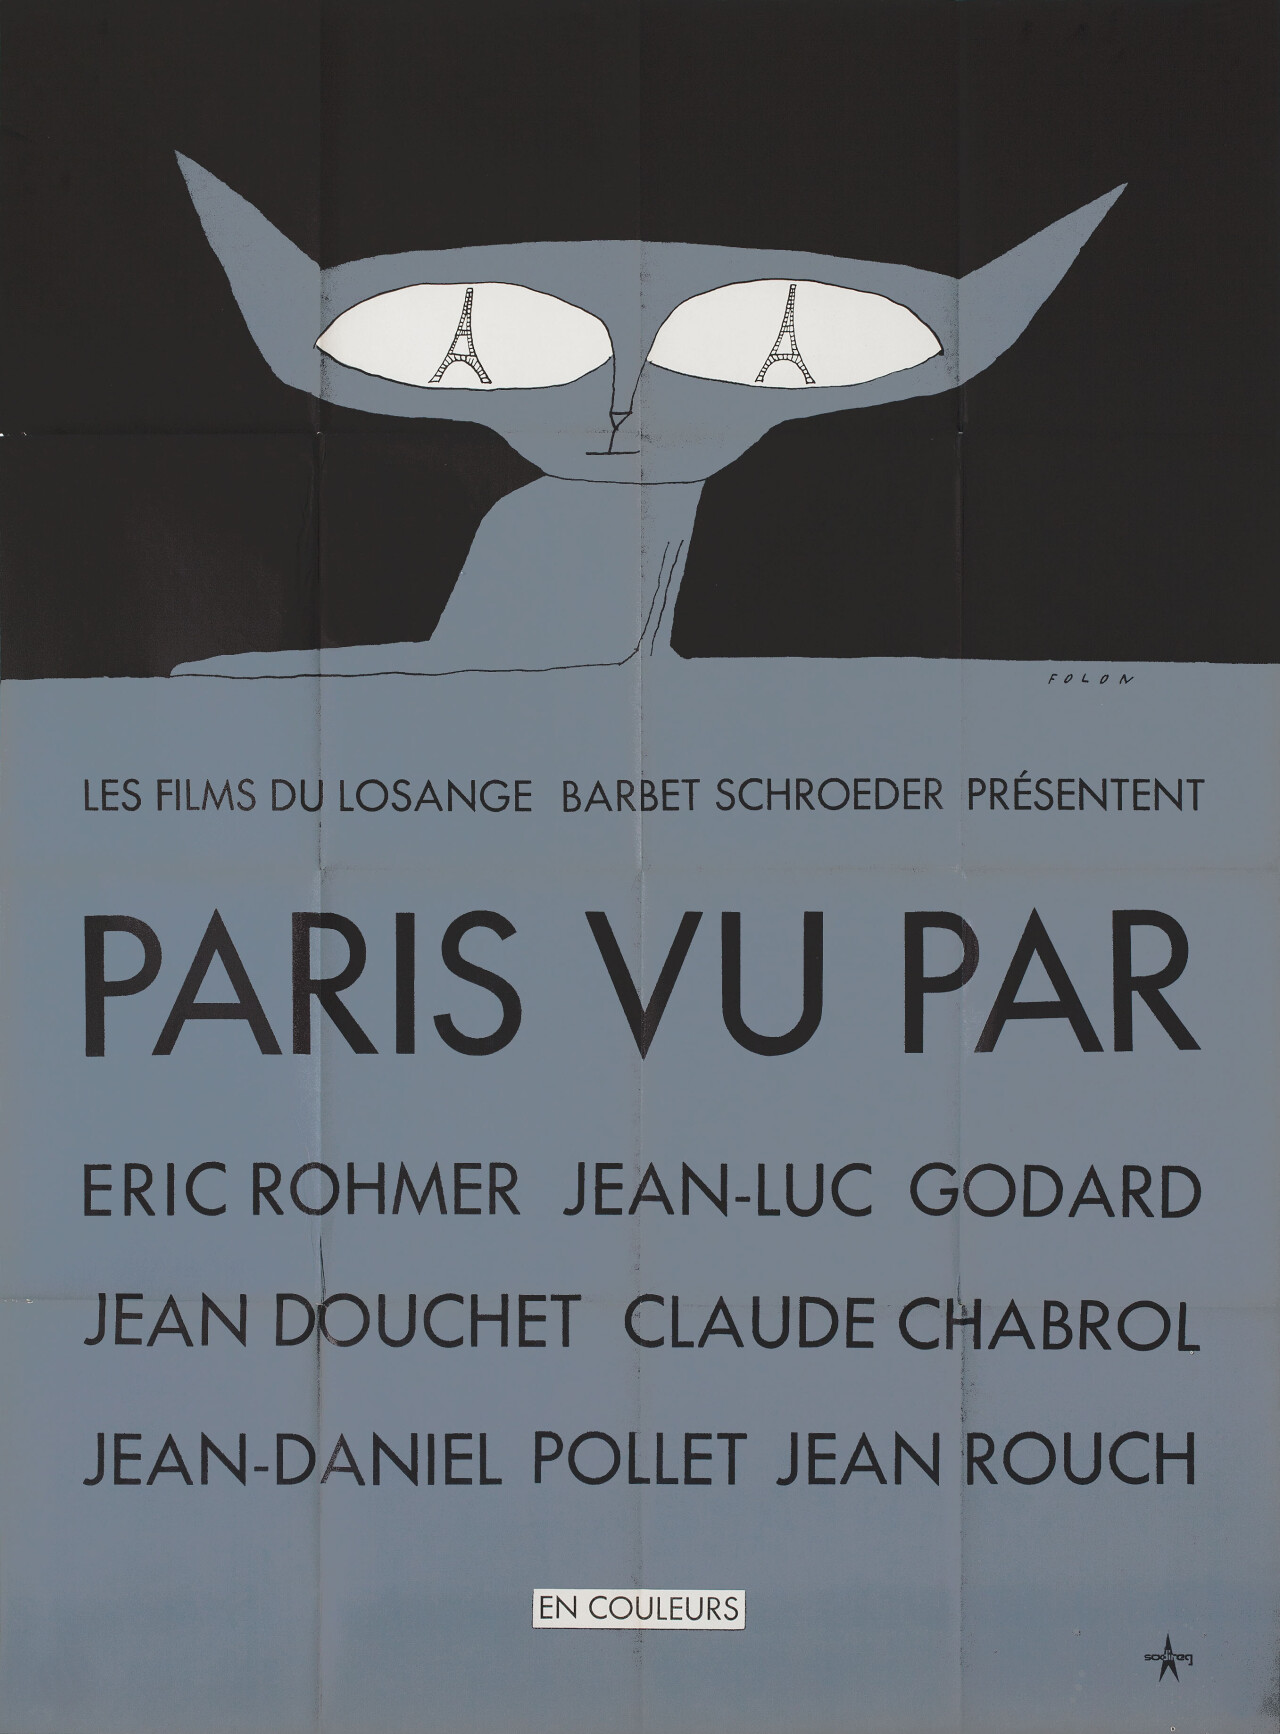 Париж глазами шести (Paris vu par  1965), режиссёр Клод Шаброль, минималистичный постер к фильму (Франция, 1965 год), автор Жан-Мишель Фолон